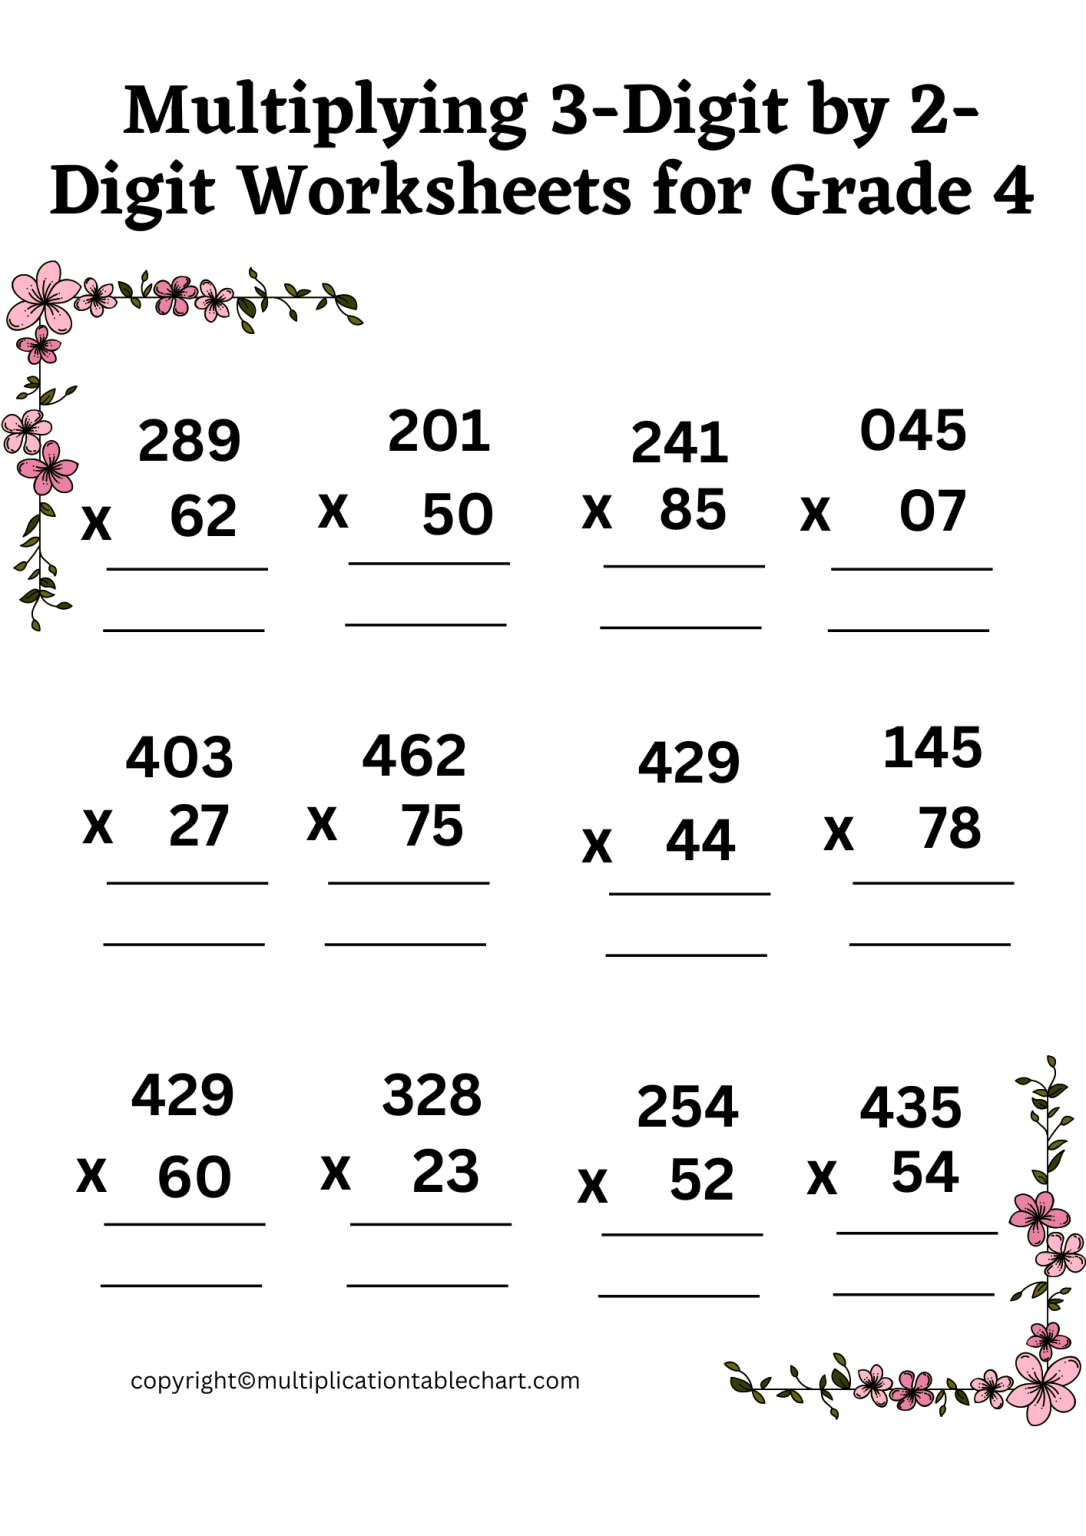 multiply-3-digit-number-by-2-digit-number-worksheet-grade-4